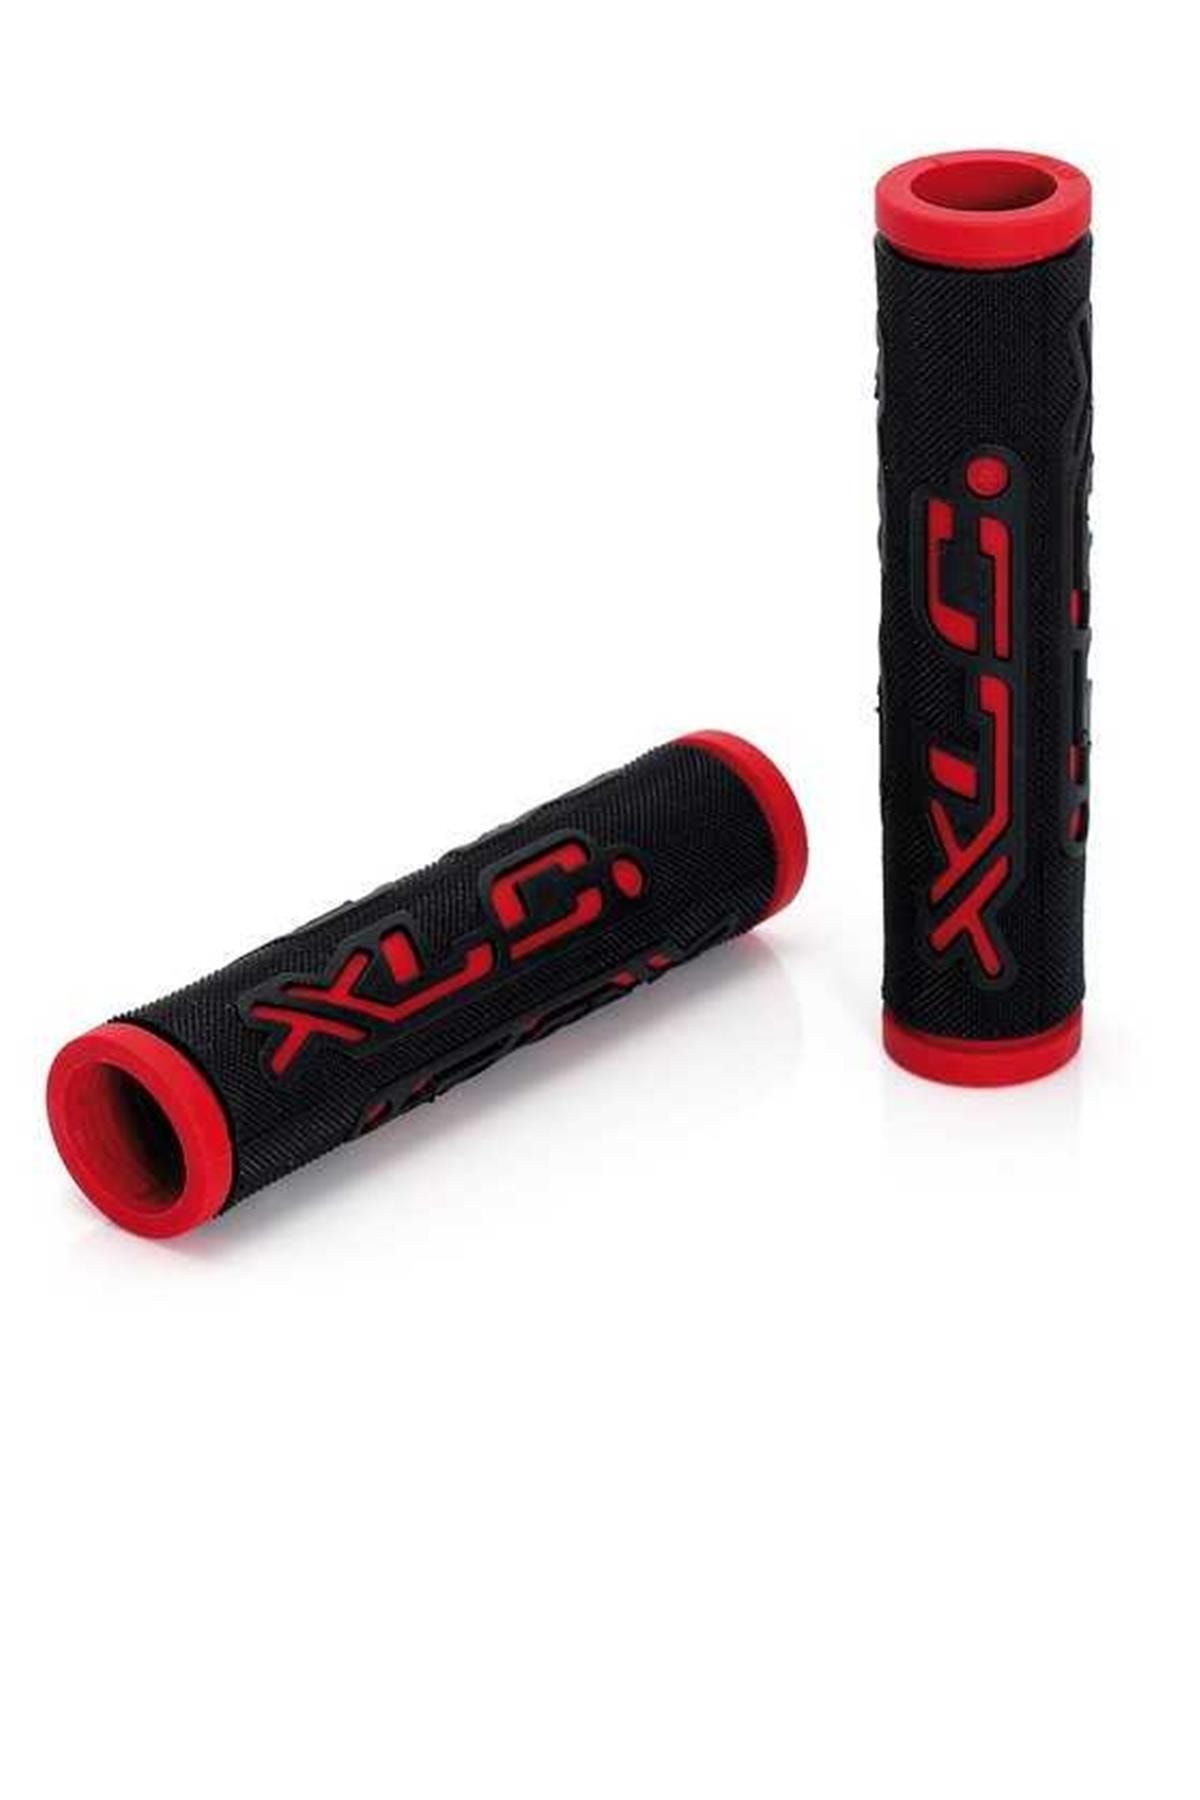 XLC Çift Renkli Bisiklet Elciği 125mm Siyah Kırmızı